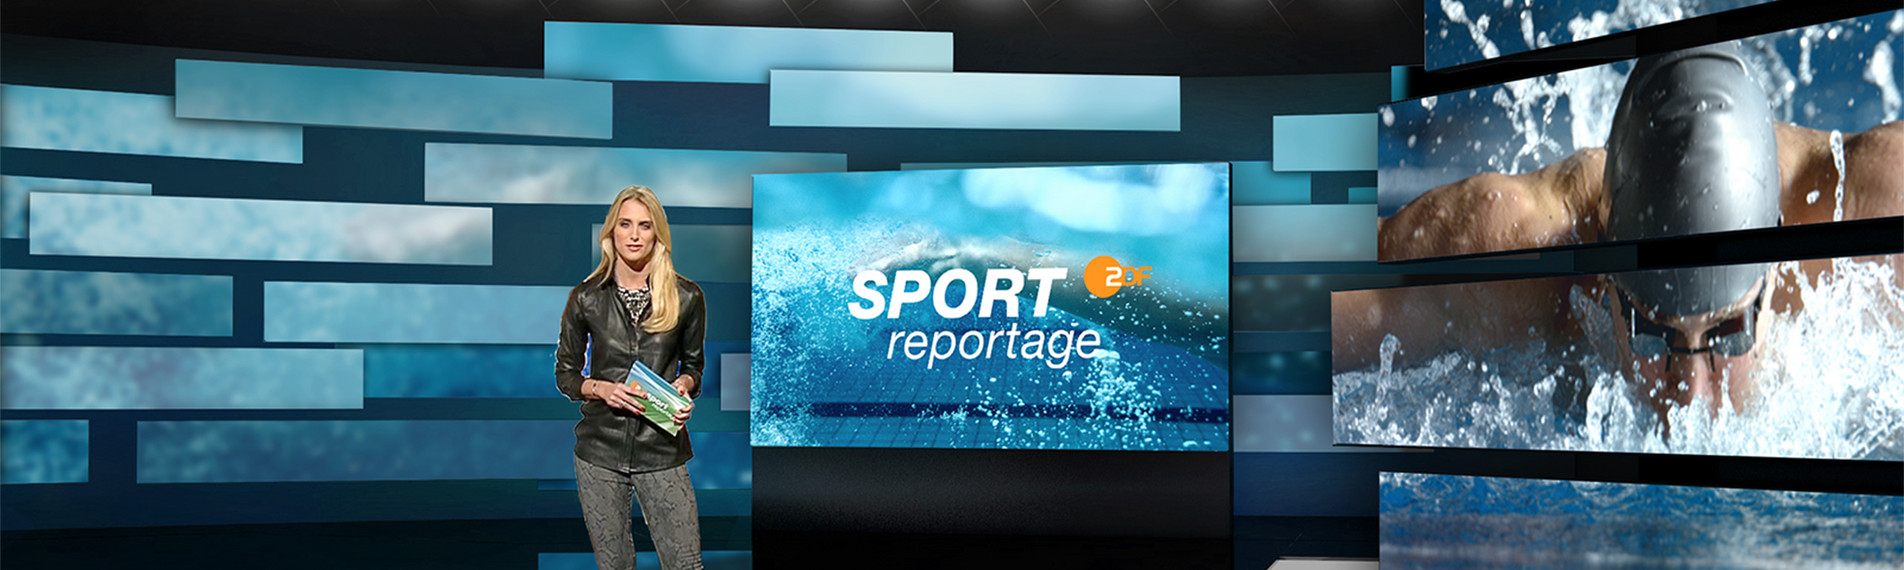 Pressemappe Der ZDF-Sport im neuen Design ZDF-Presseportal